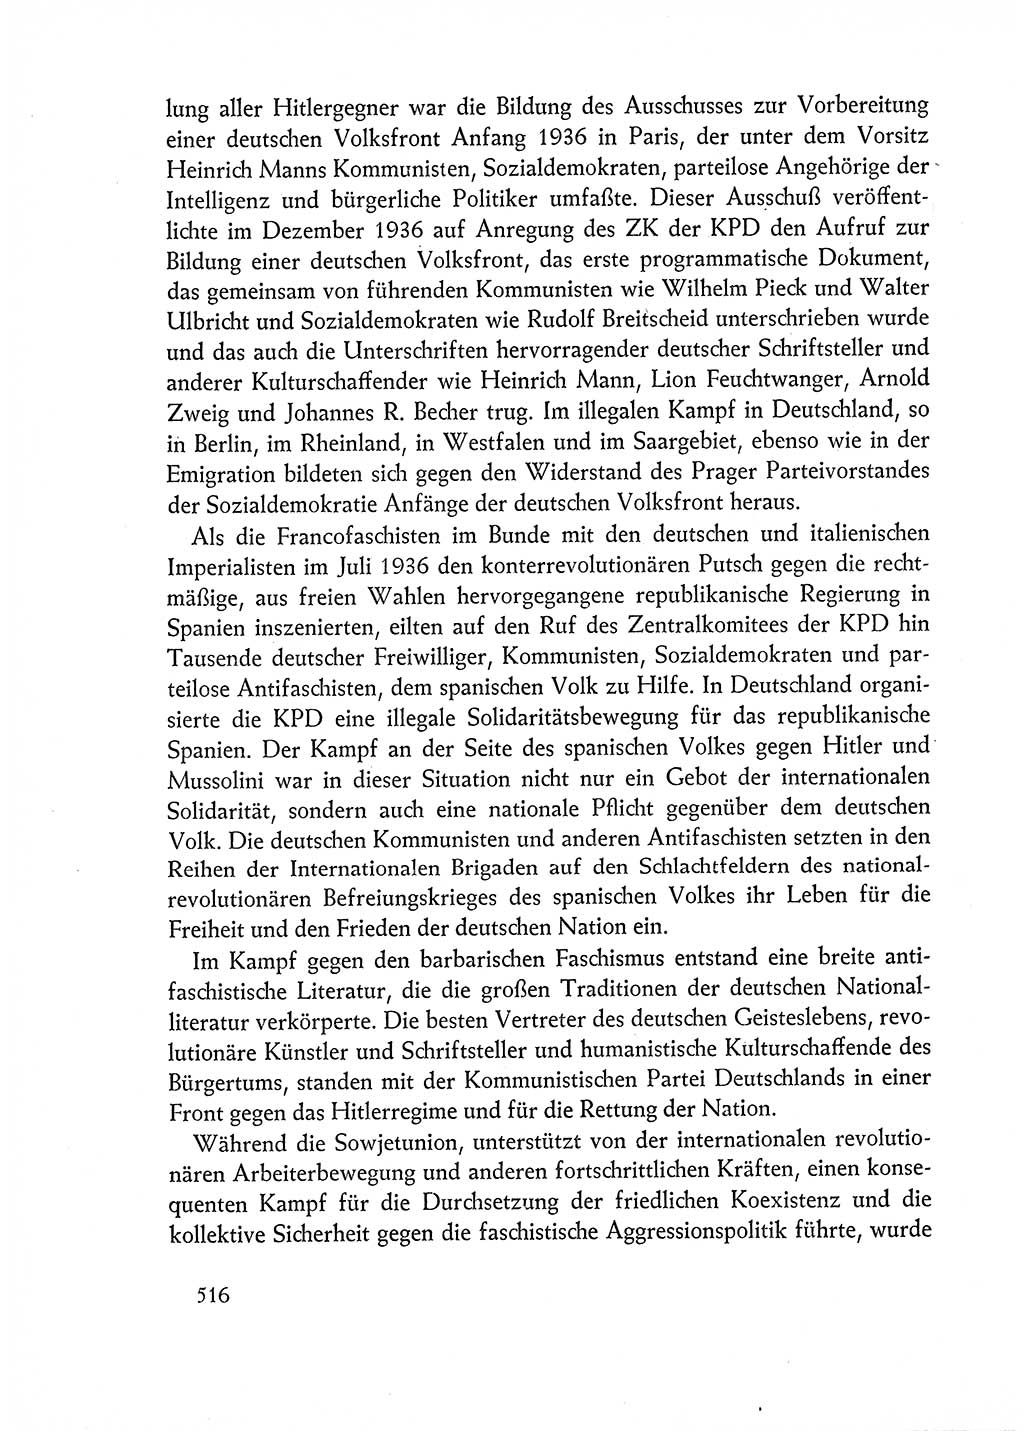 Dokumente der Sozialistischen Einheitspartei Deutschlands (SED) [Deutsche Demokratische Republik (DDR)] 1962-1963, Seite 516 (Dok. SED DDR 1962-1963, S. 516)